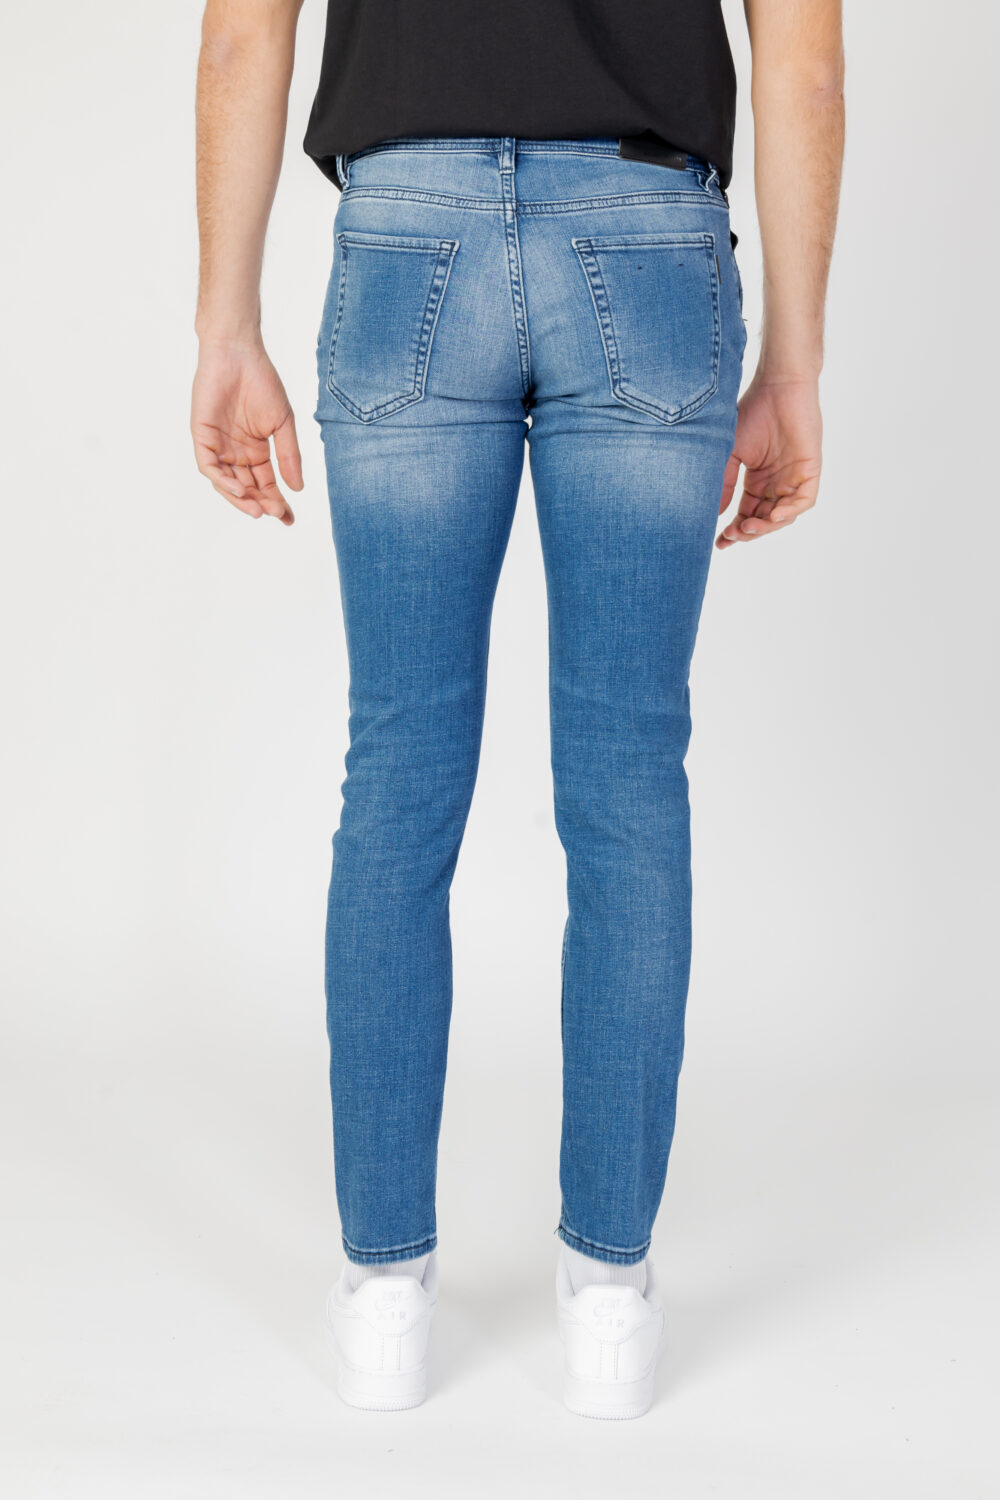 Jeans skinny Antony Morato mason Denim - Foto 6